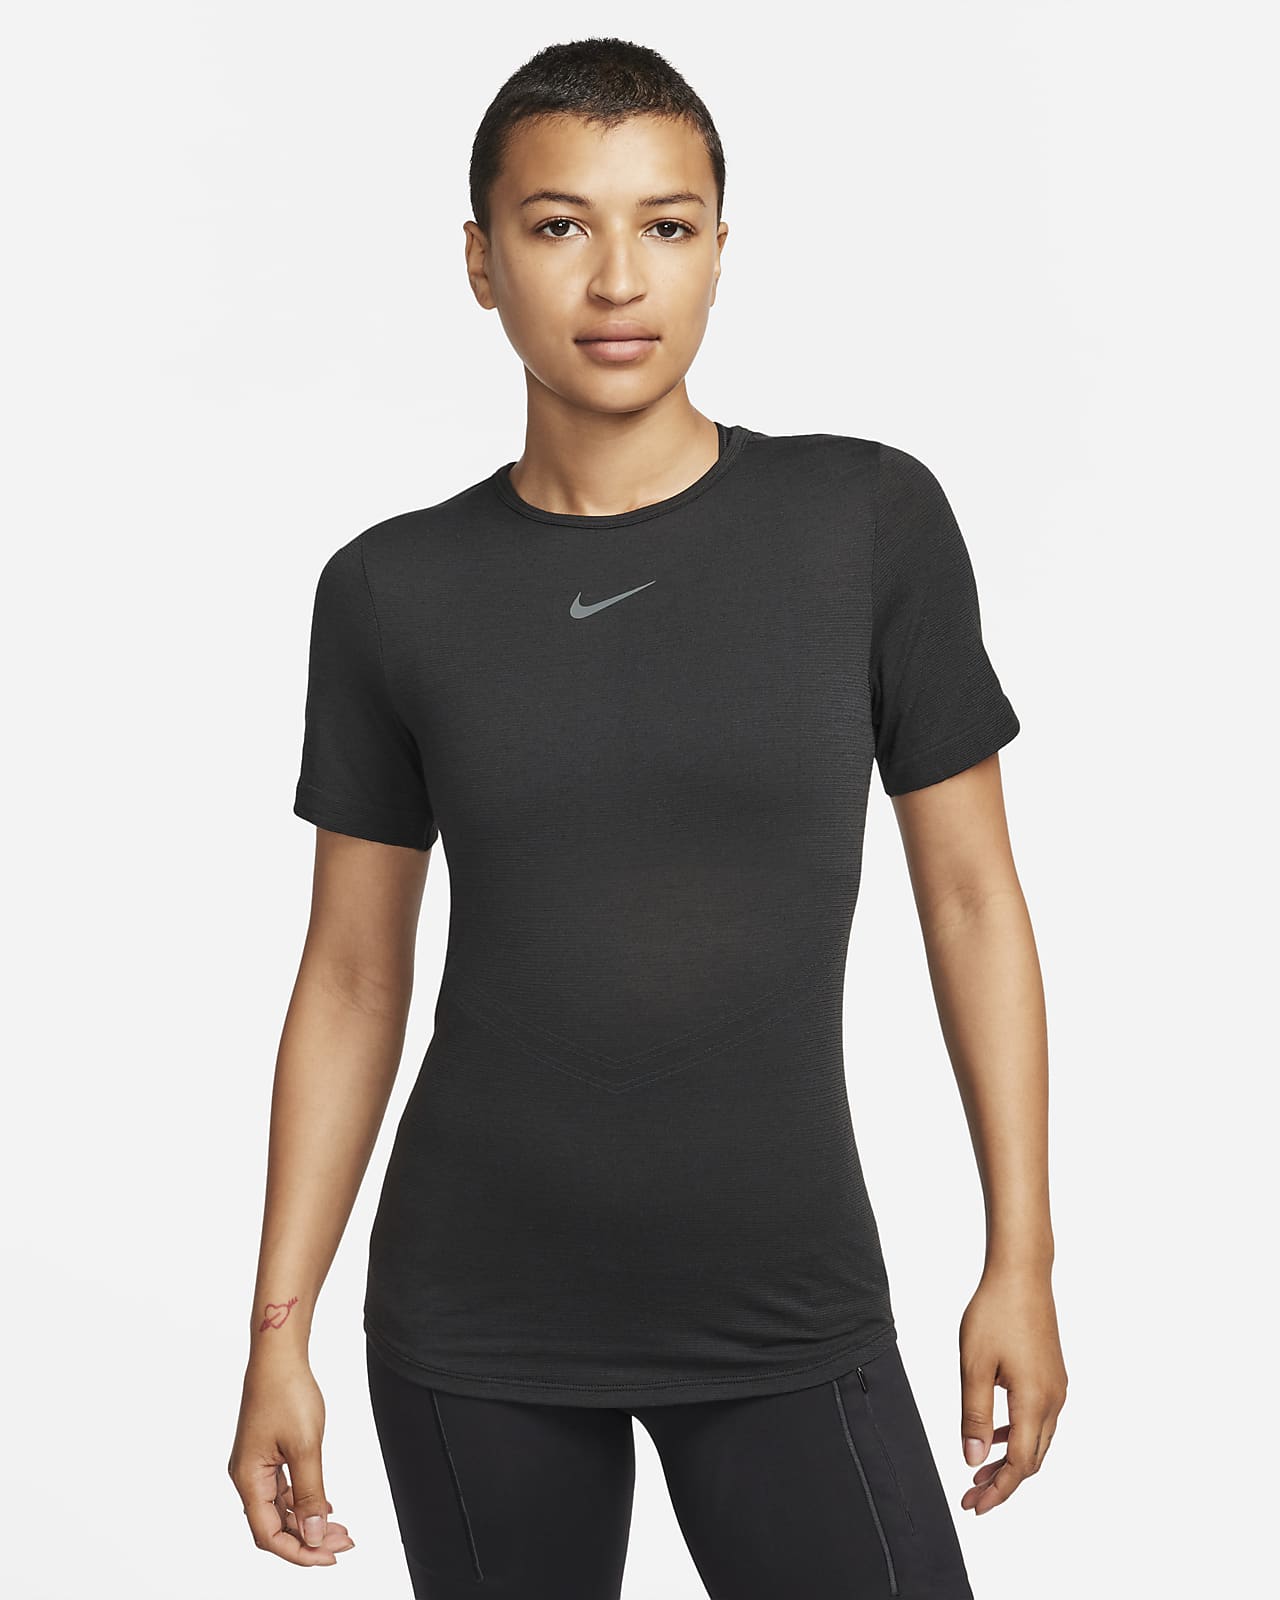 Nike Swift Wool Dri-FIT rövid ujjú női futófelső